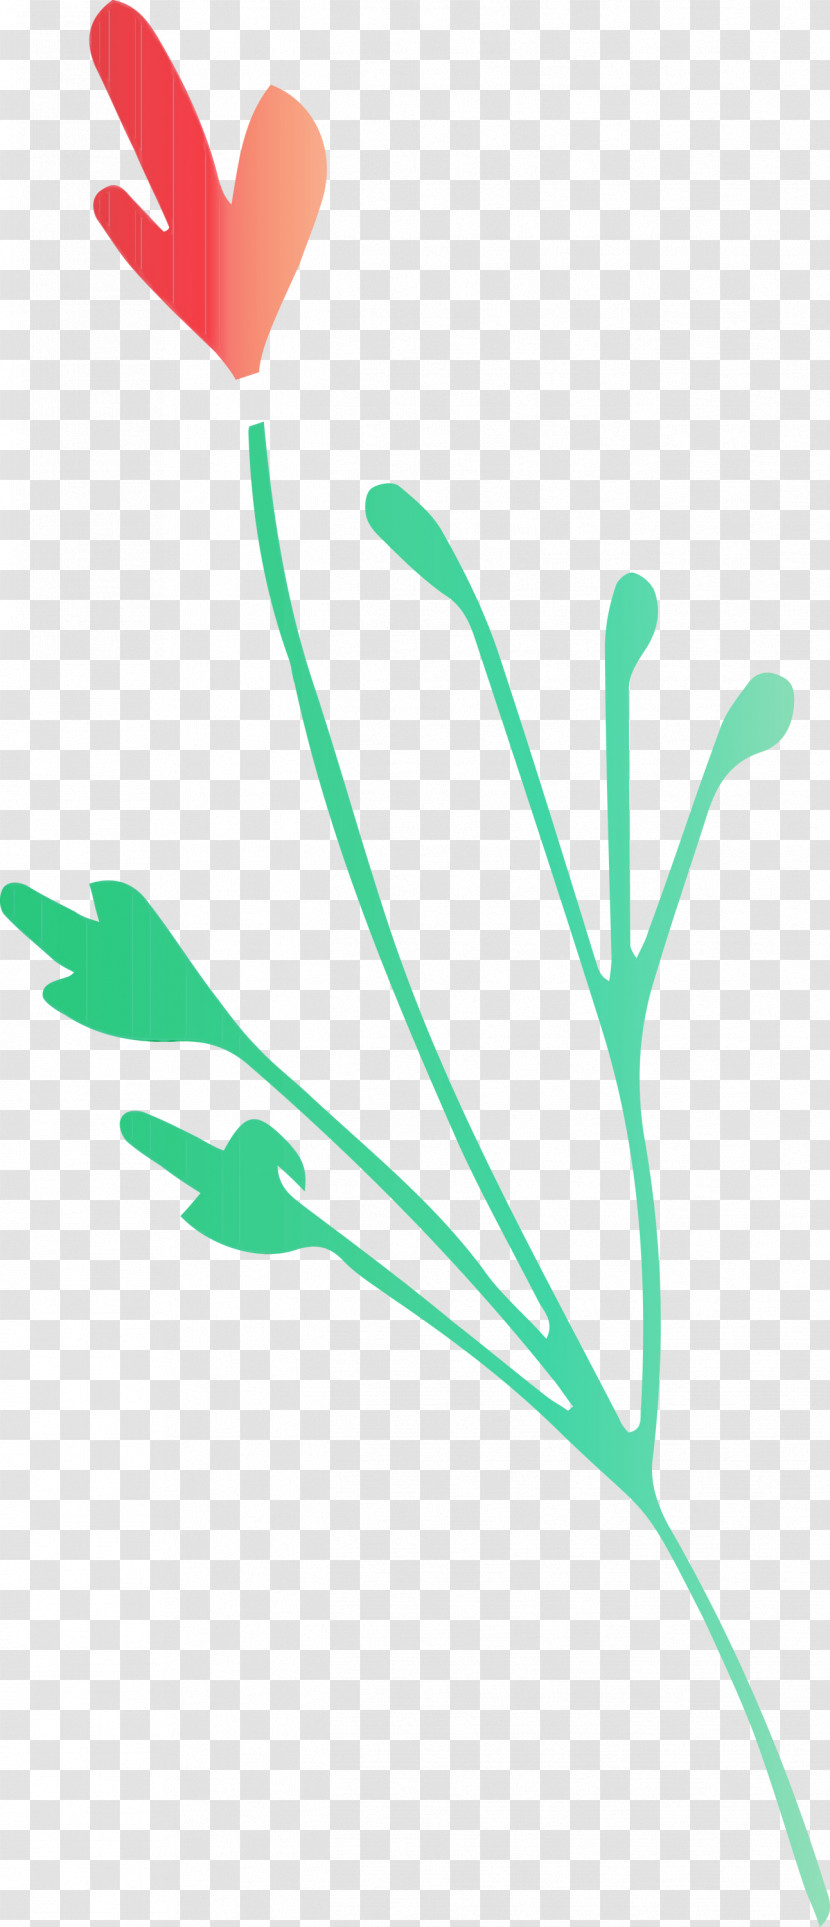 Plant Stem Leaf Green Line Meter Transparent PNG